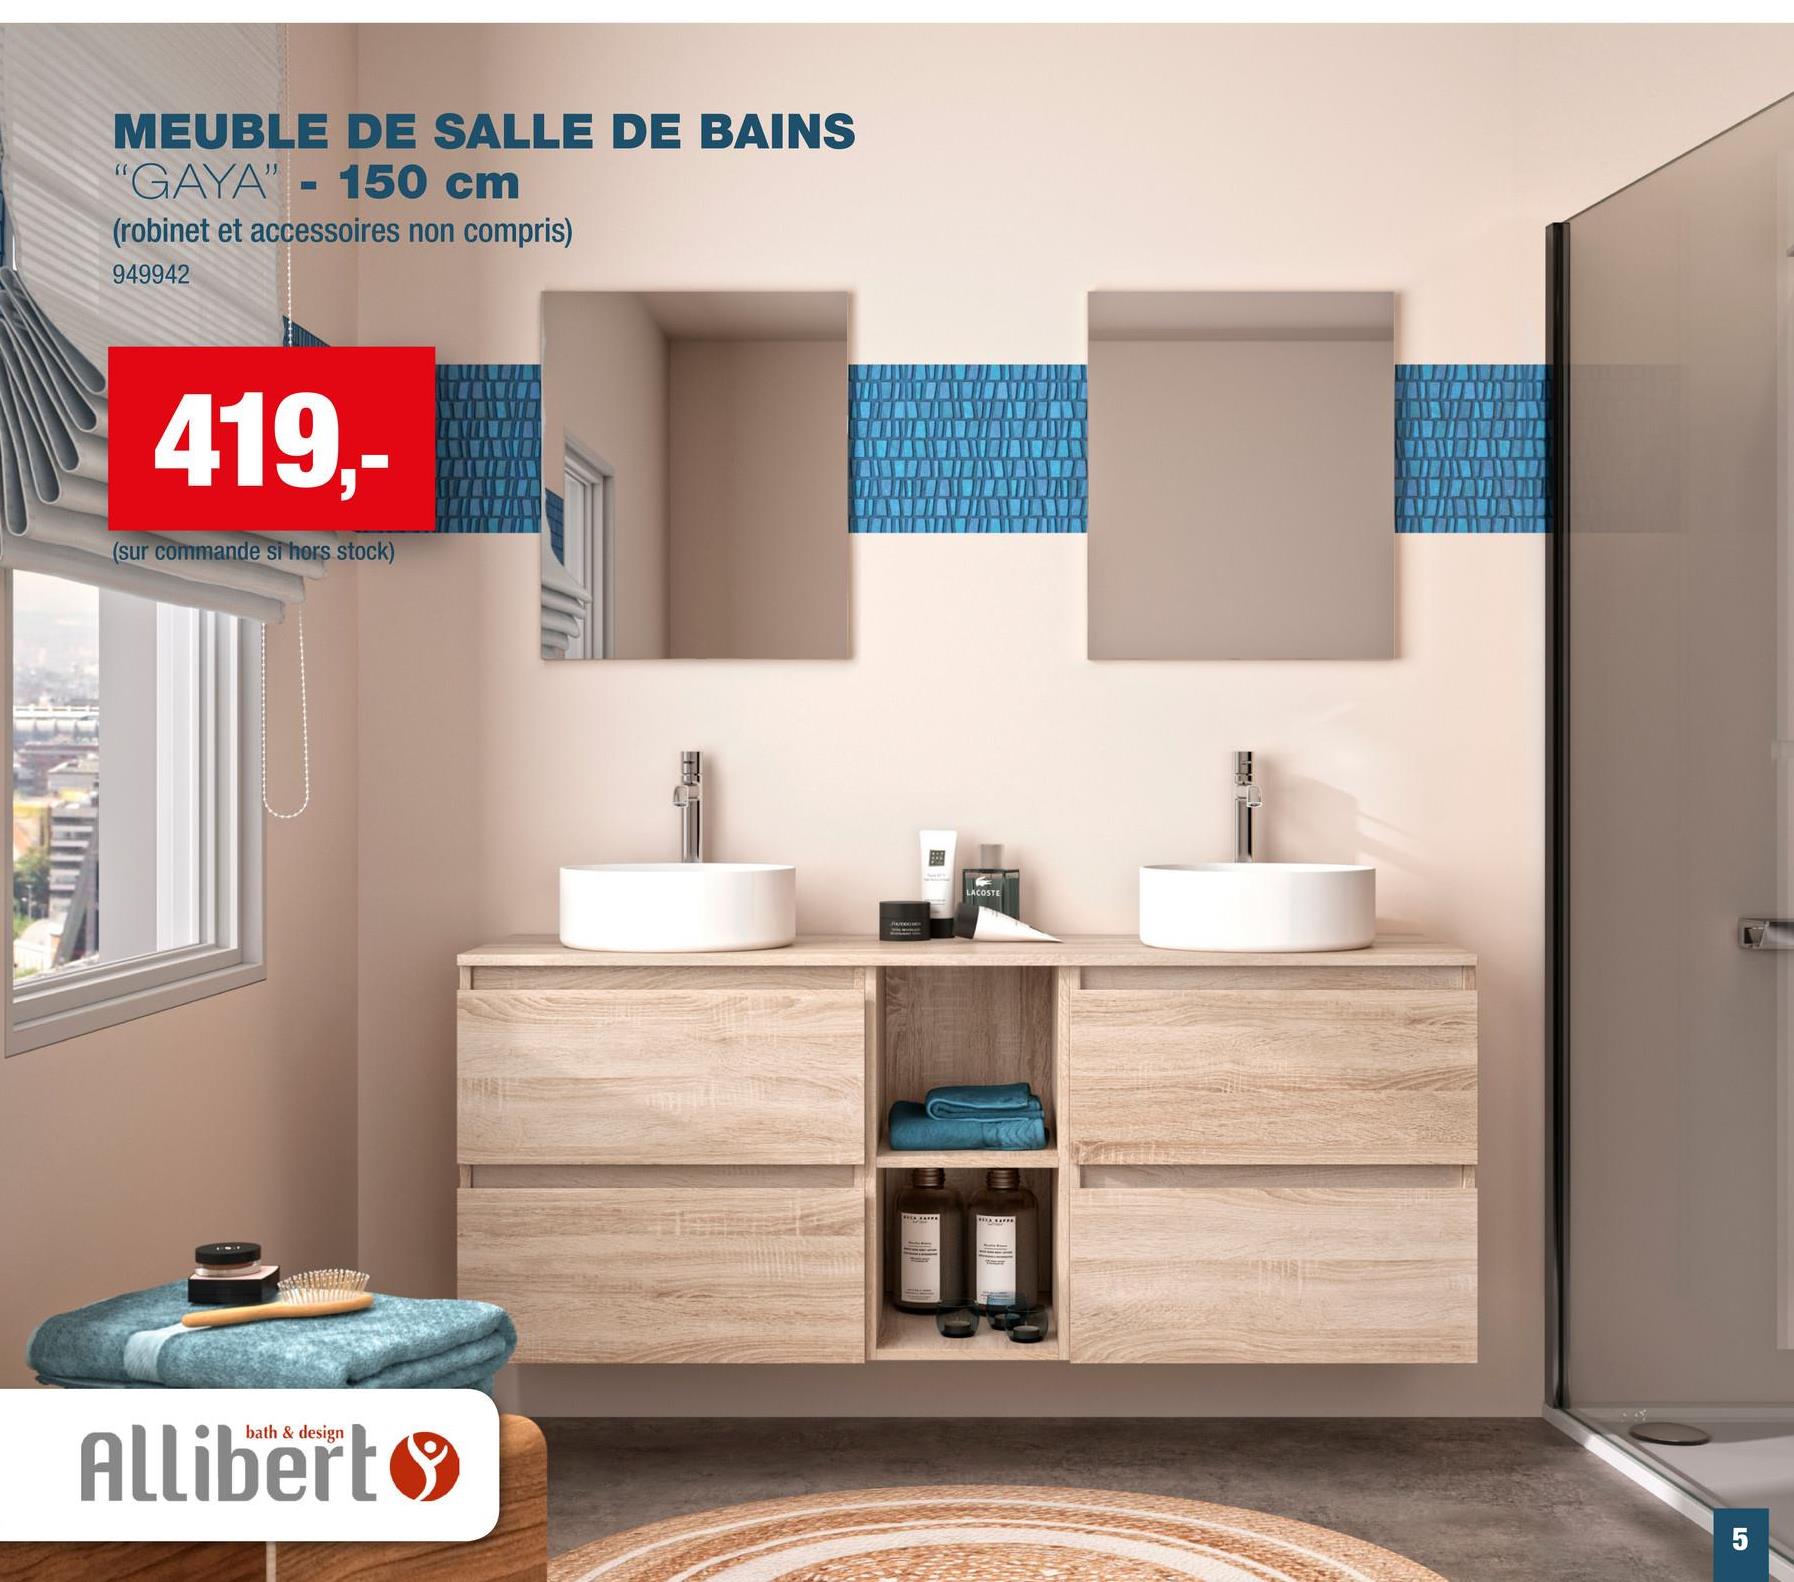 MEUBLE DE SALLE DE BAINS
"GAYA" - 150 cm
(robinet et accessoires non compris)
949942
419,-
(sur commande si hors stock)
bath & design
Allibert
LACOSTE